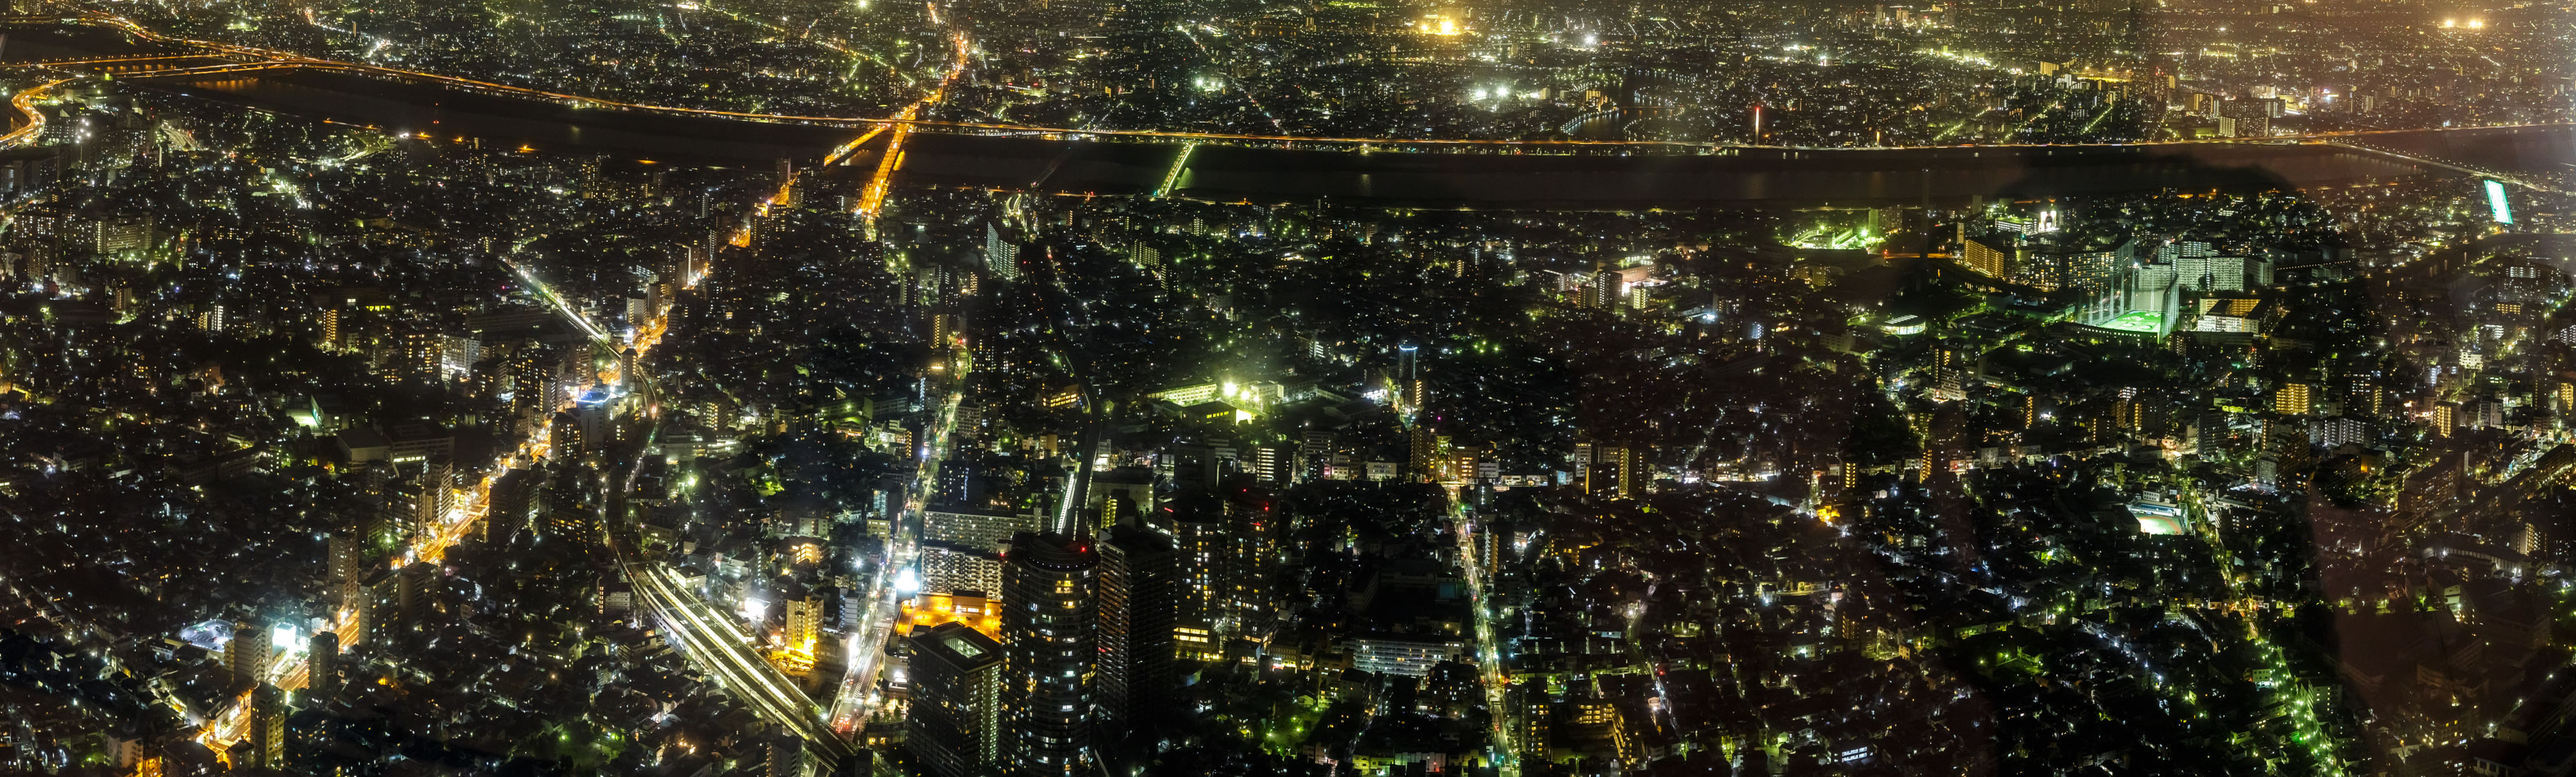 /Guewen/galeries/public/Voyages/Japon/Tokyo/Skytree-Tower/450/Skytree_79.jpg